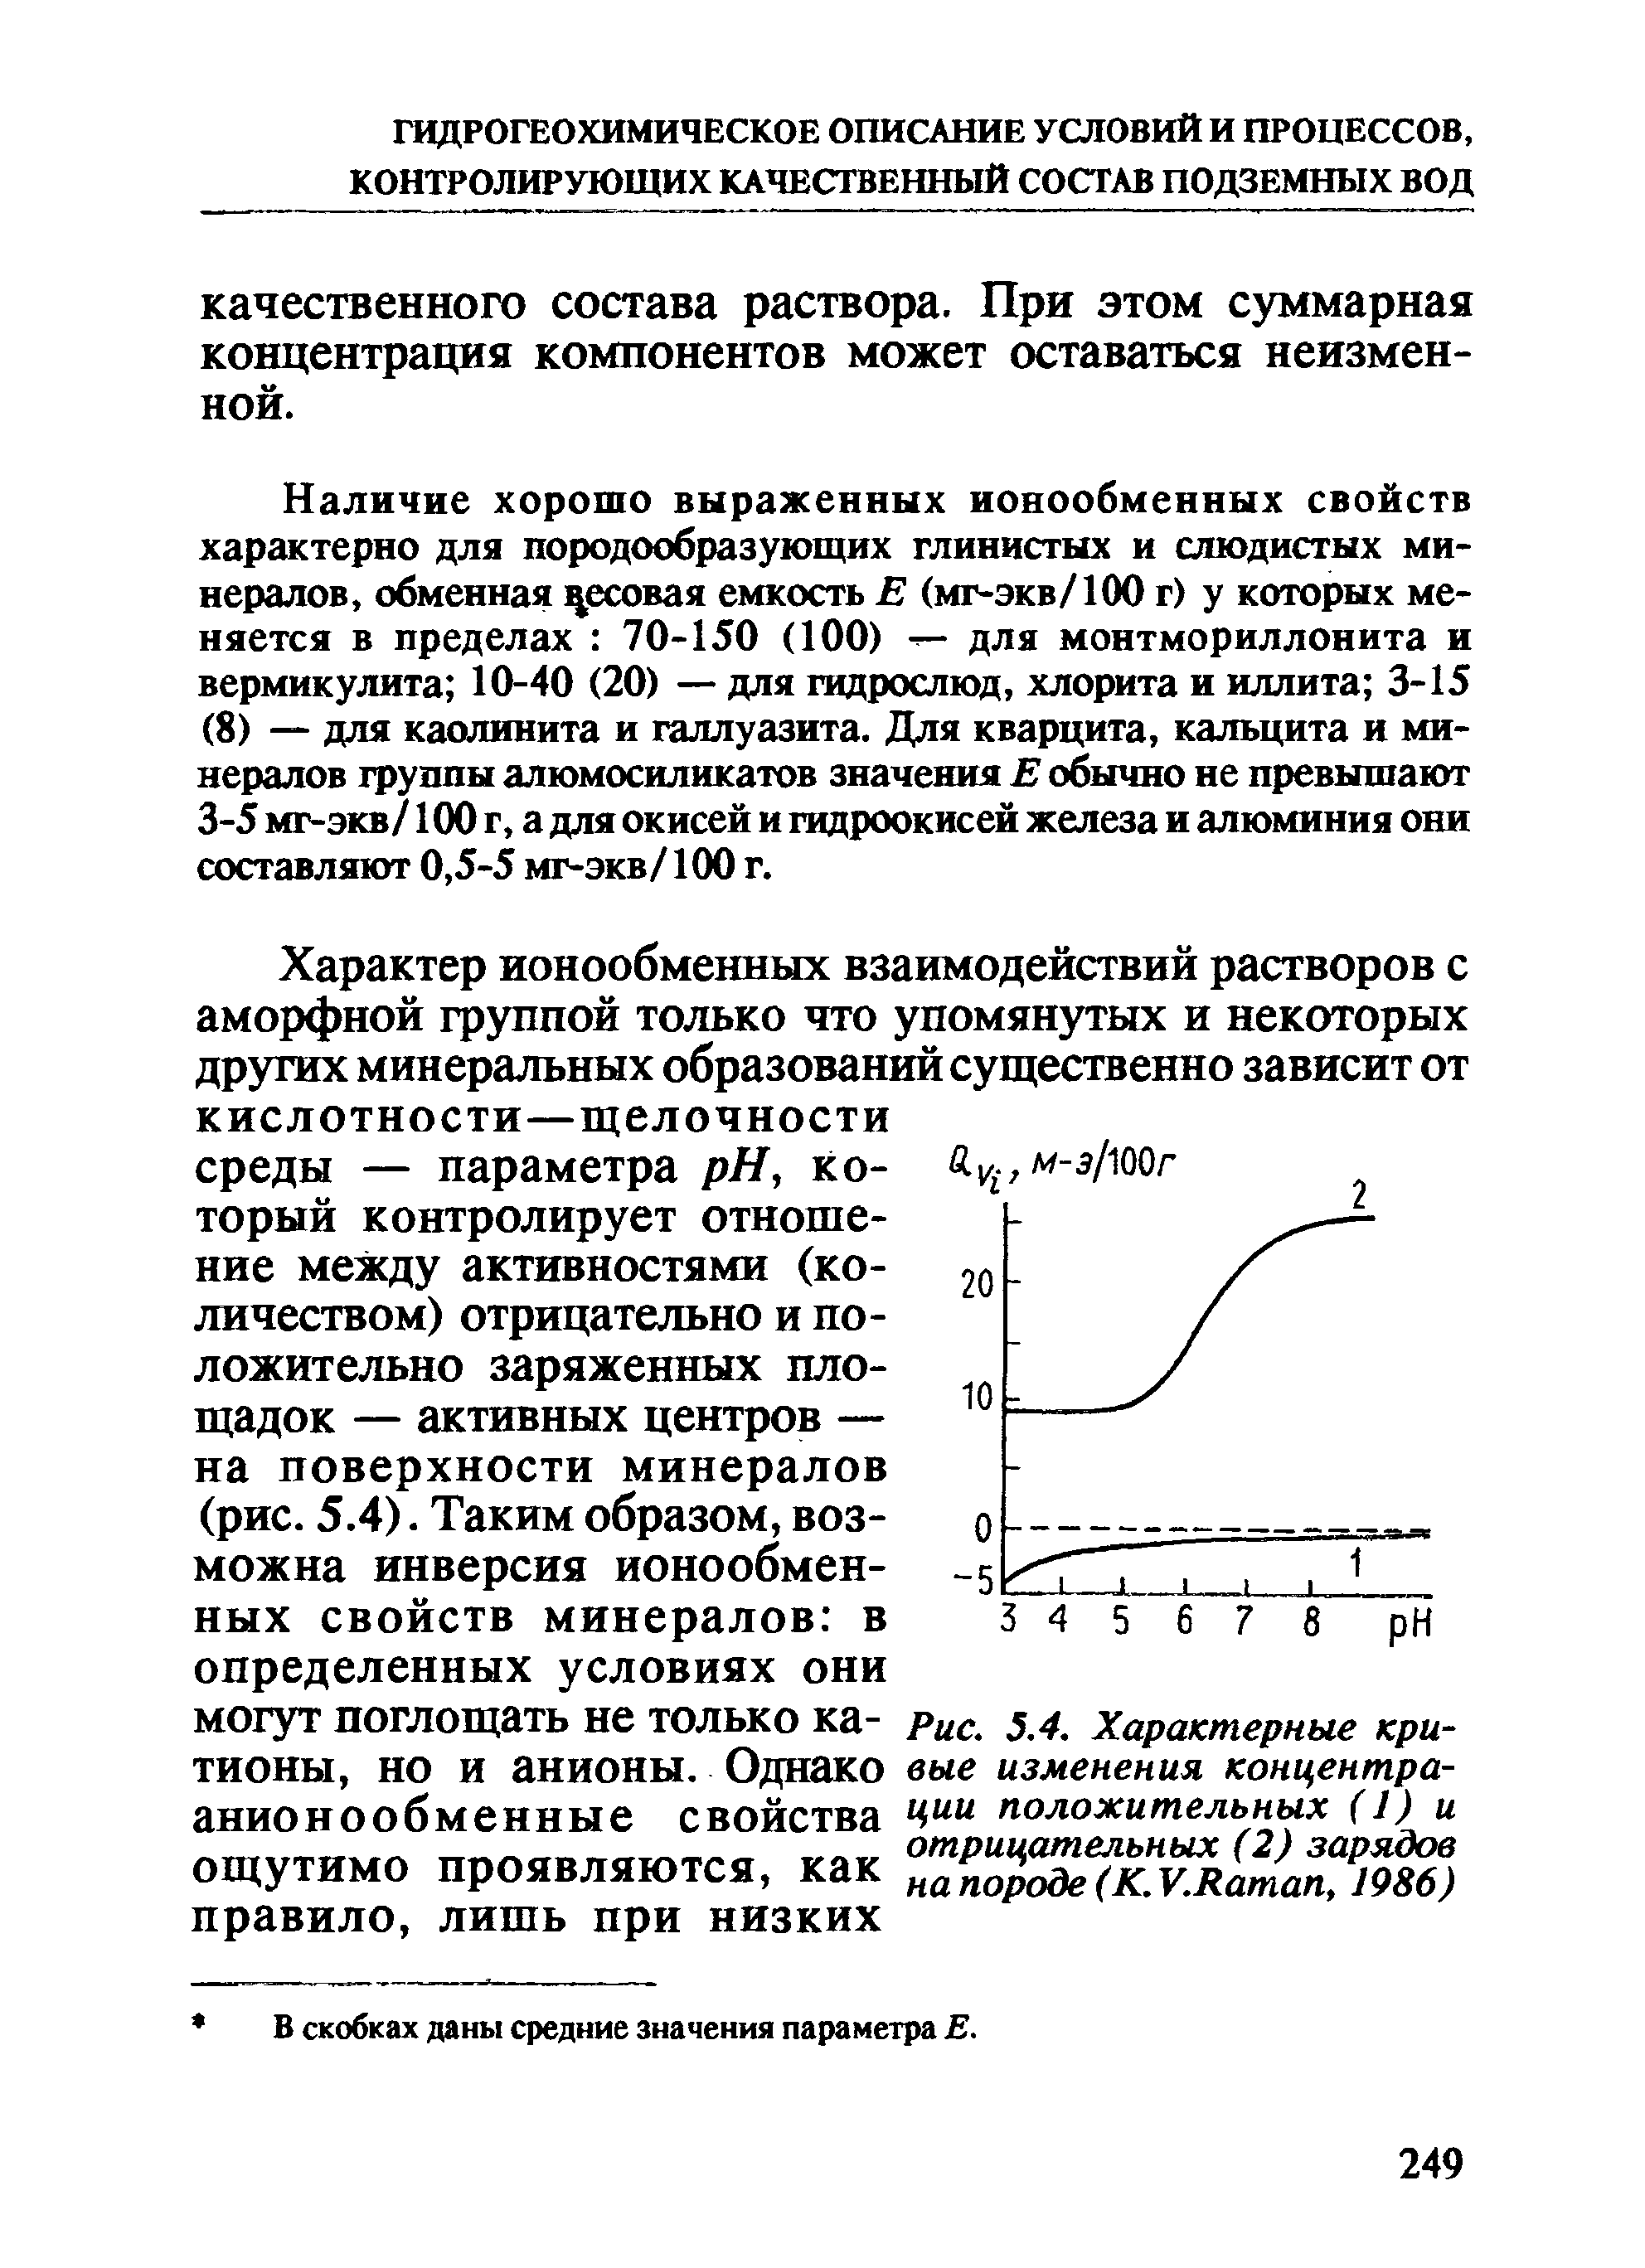 Наличие хорошо выраженных ионообменных свойств характерно для породообразующих глинистых и слюдистых минералов, обменная есовая емкость Е (мг-экв/100 г) у которых меняется в пределах 70-150 (100) — для монтмориллонита и вермикулита 10-40 (20) — для гидрослюд, хлорита и иллита 3-15 (8) — для каолинита и галлуазита. Для кварцита, кальцита и минералов группы алюмосиликатов значения Е обычно не превышают 3-5 мг-экв/100 г, а для окисей и гидроокисей железа и алюминия они составляют 0,5-5 мг-экв/100 г.